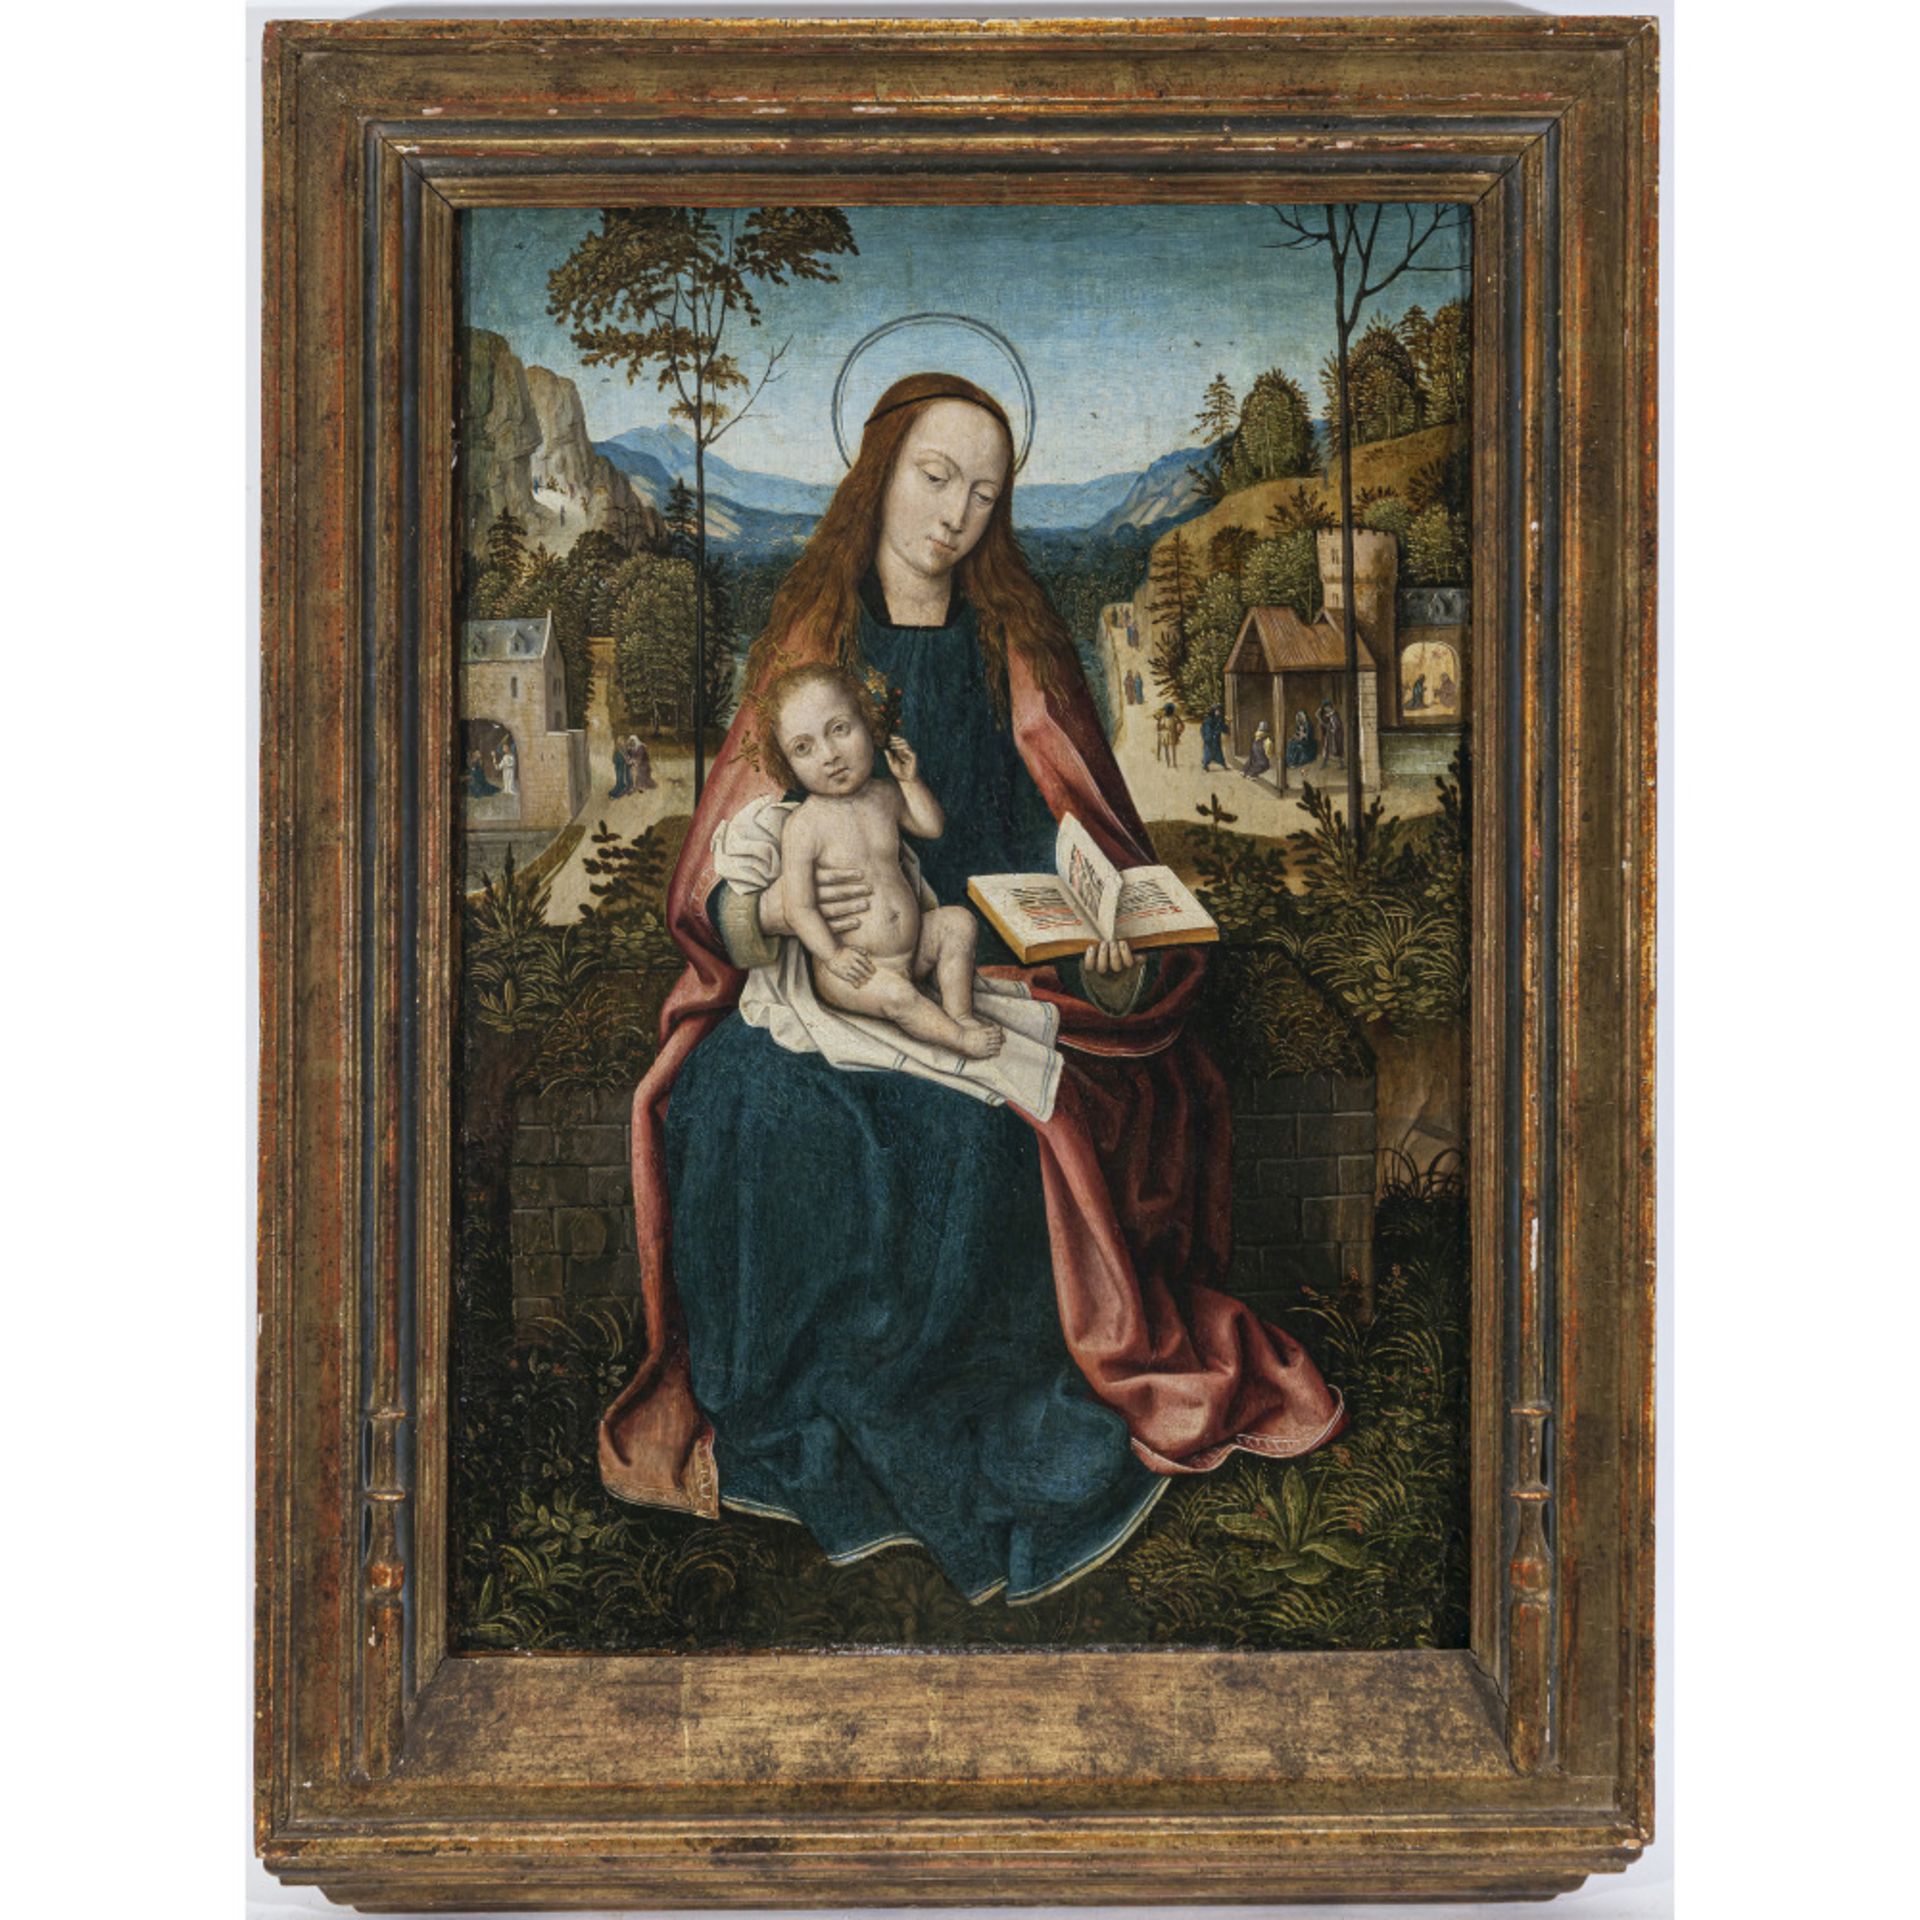 Meister von Frankfurt, zugeschrieben - Mary and Child - Image 2 of 2